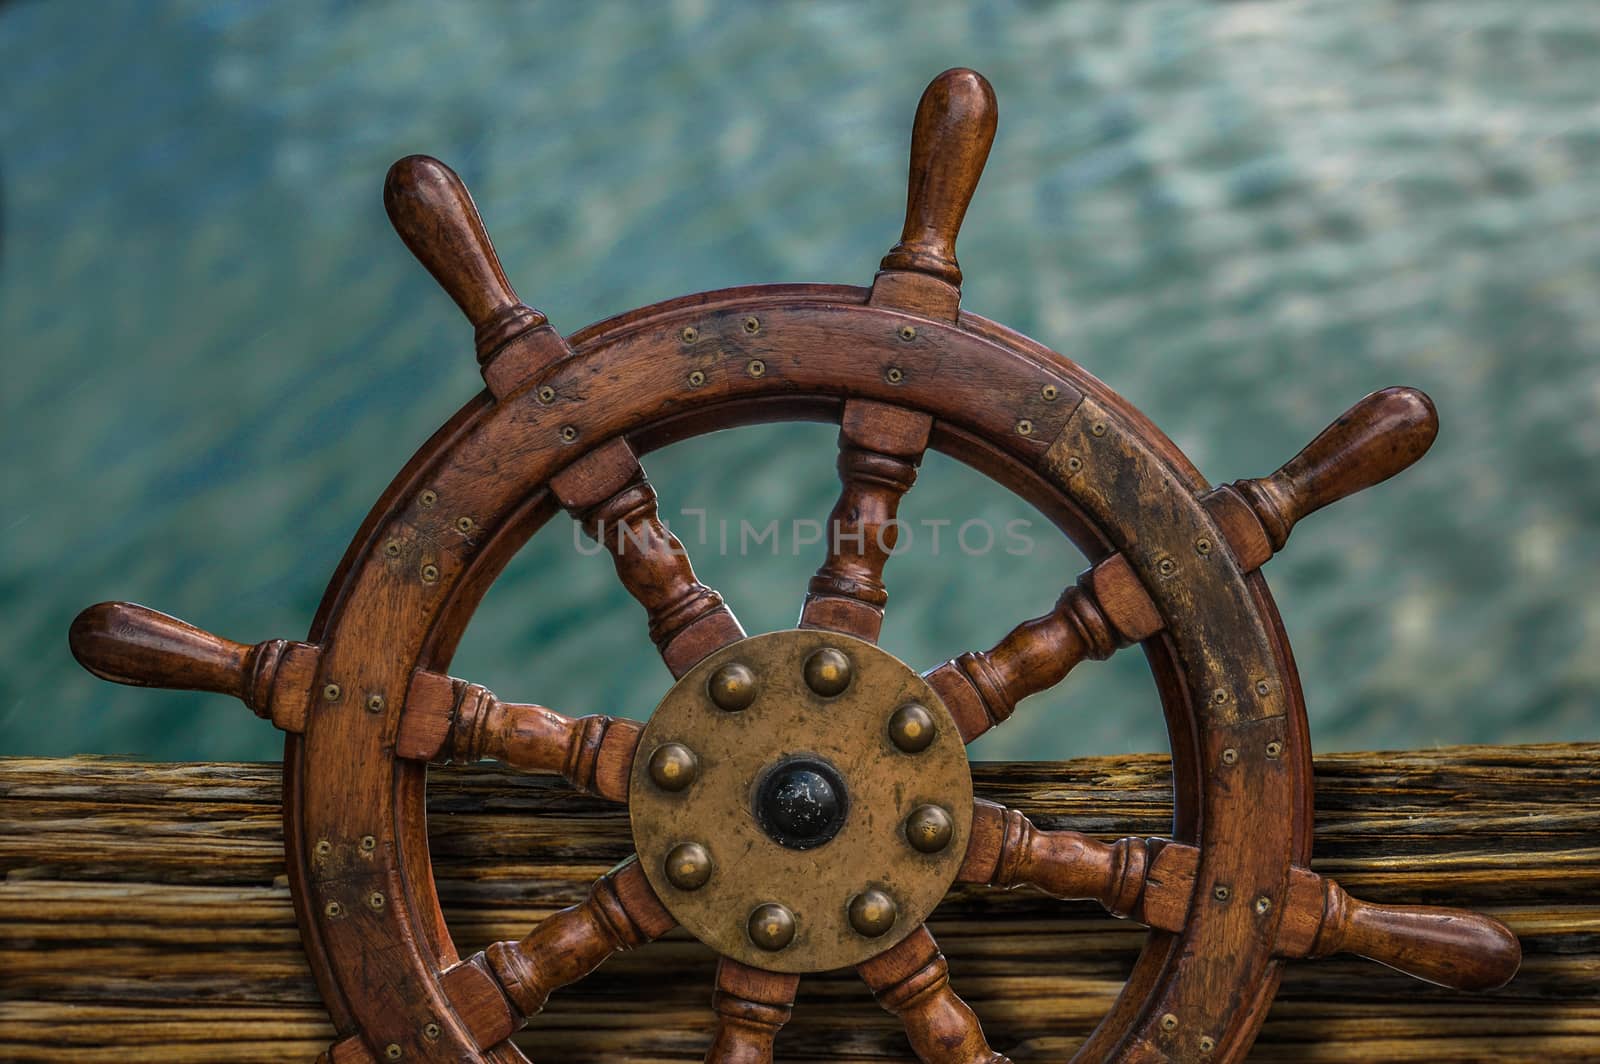 Nautical Detail Of A Ship's Wheel Against Tropical Ocean Water